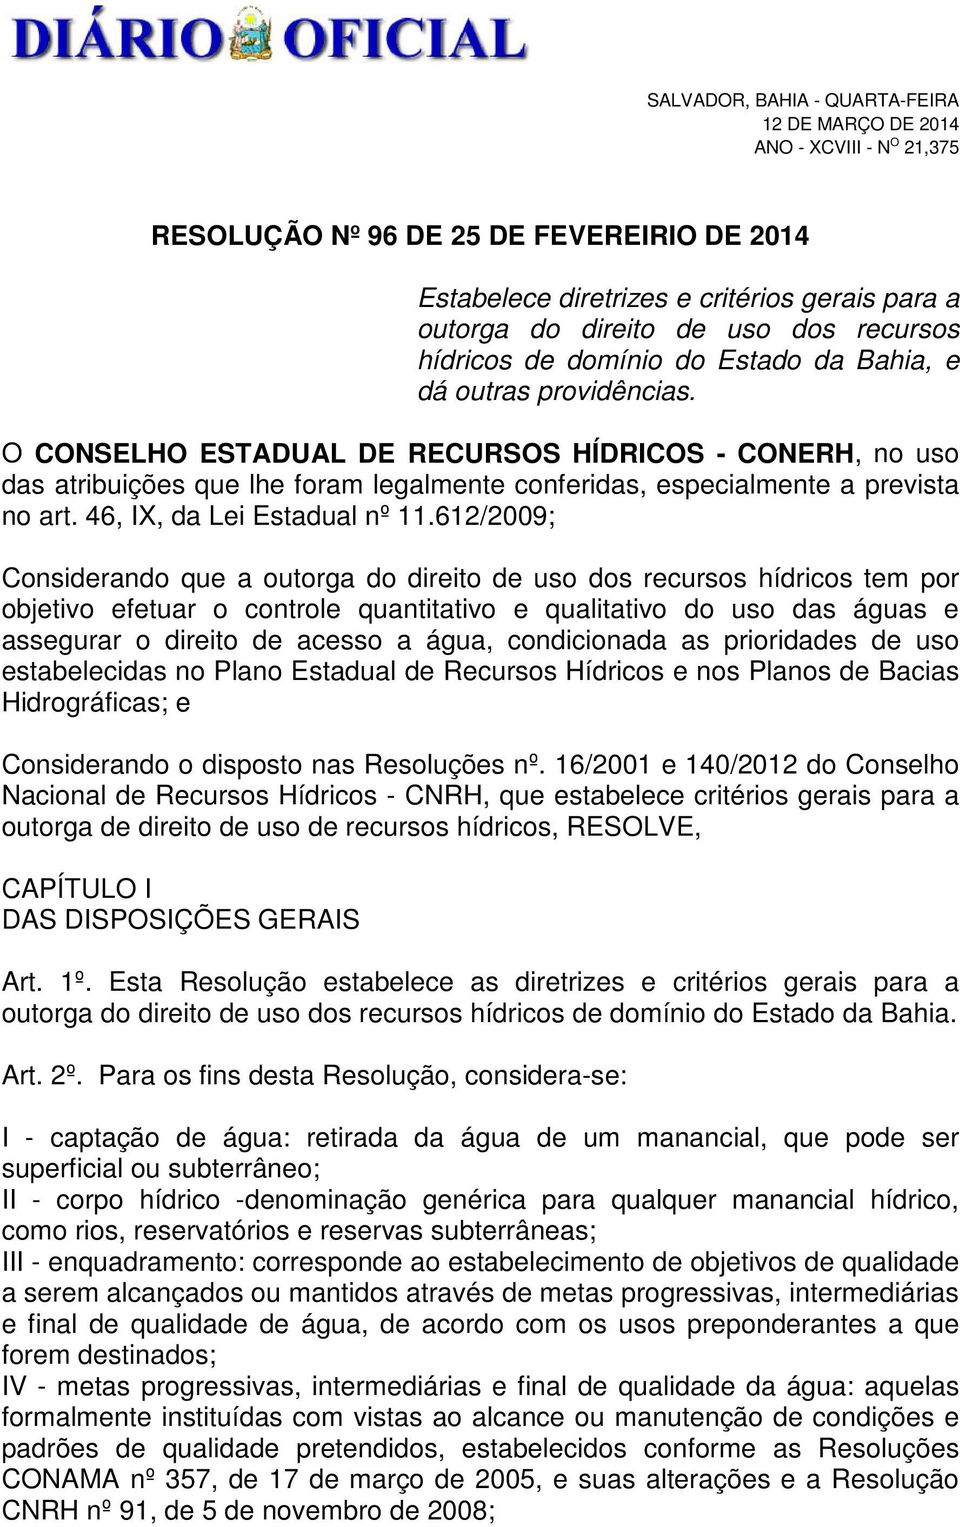 O CONSELHO ESTADUAL DE RECURSOS HÍDRICOS - CONERH, no uso das atribuições que lhe foram legalmente conferidas, especialmente a prevista no art. 46, IX, da Lei Estadual nº 11.